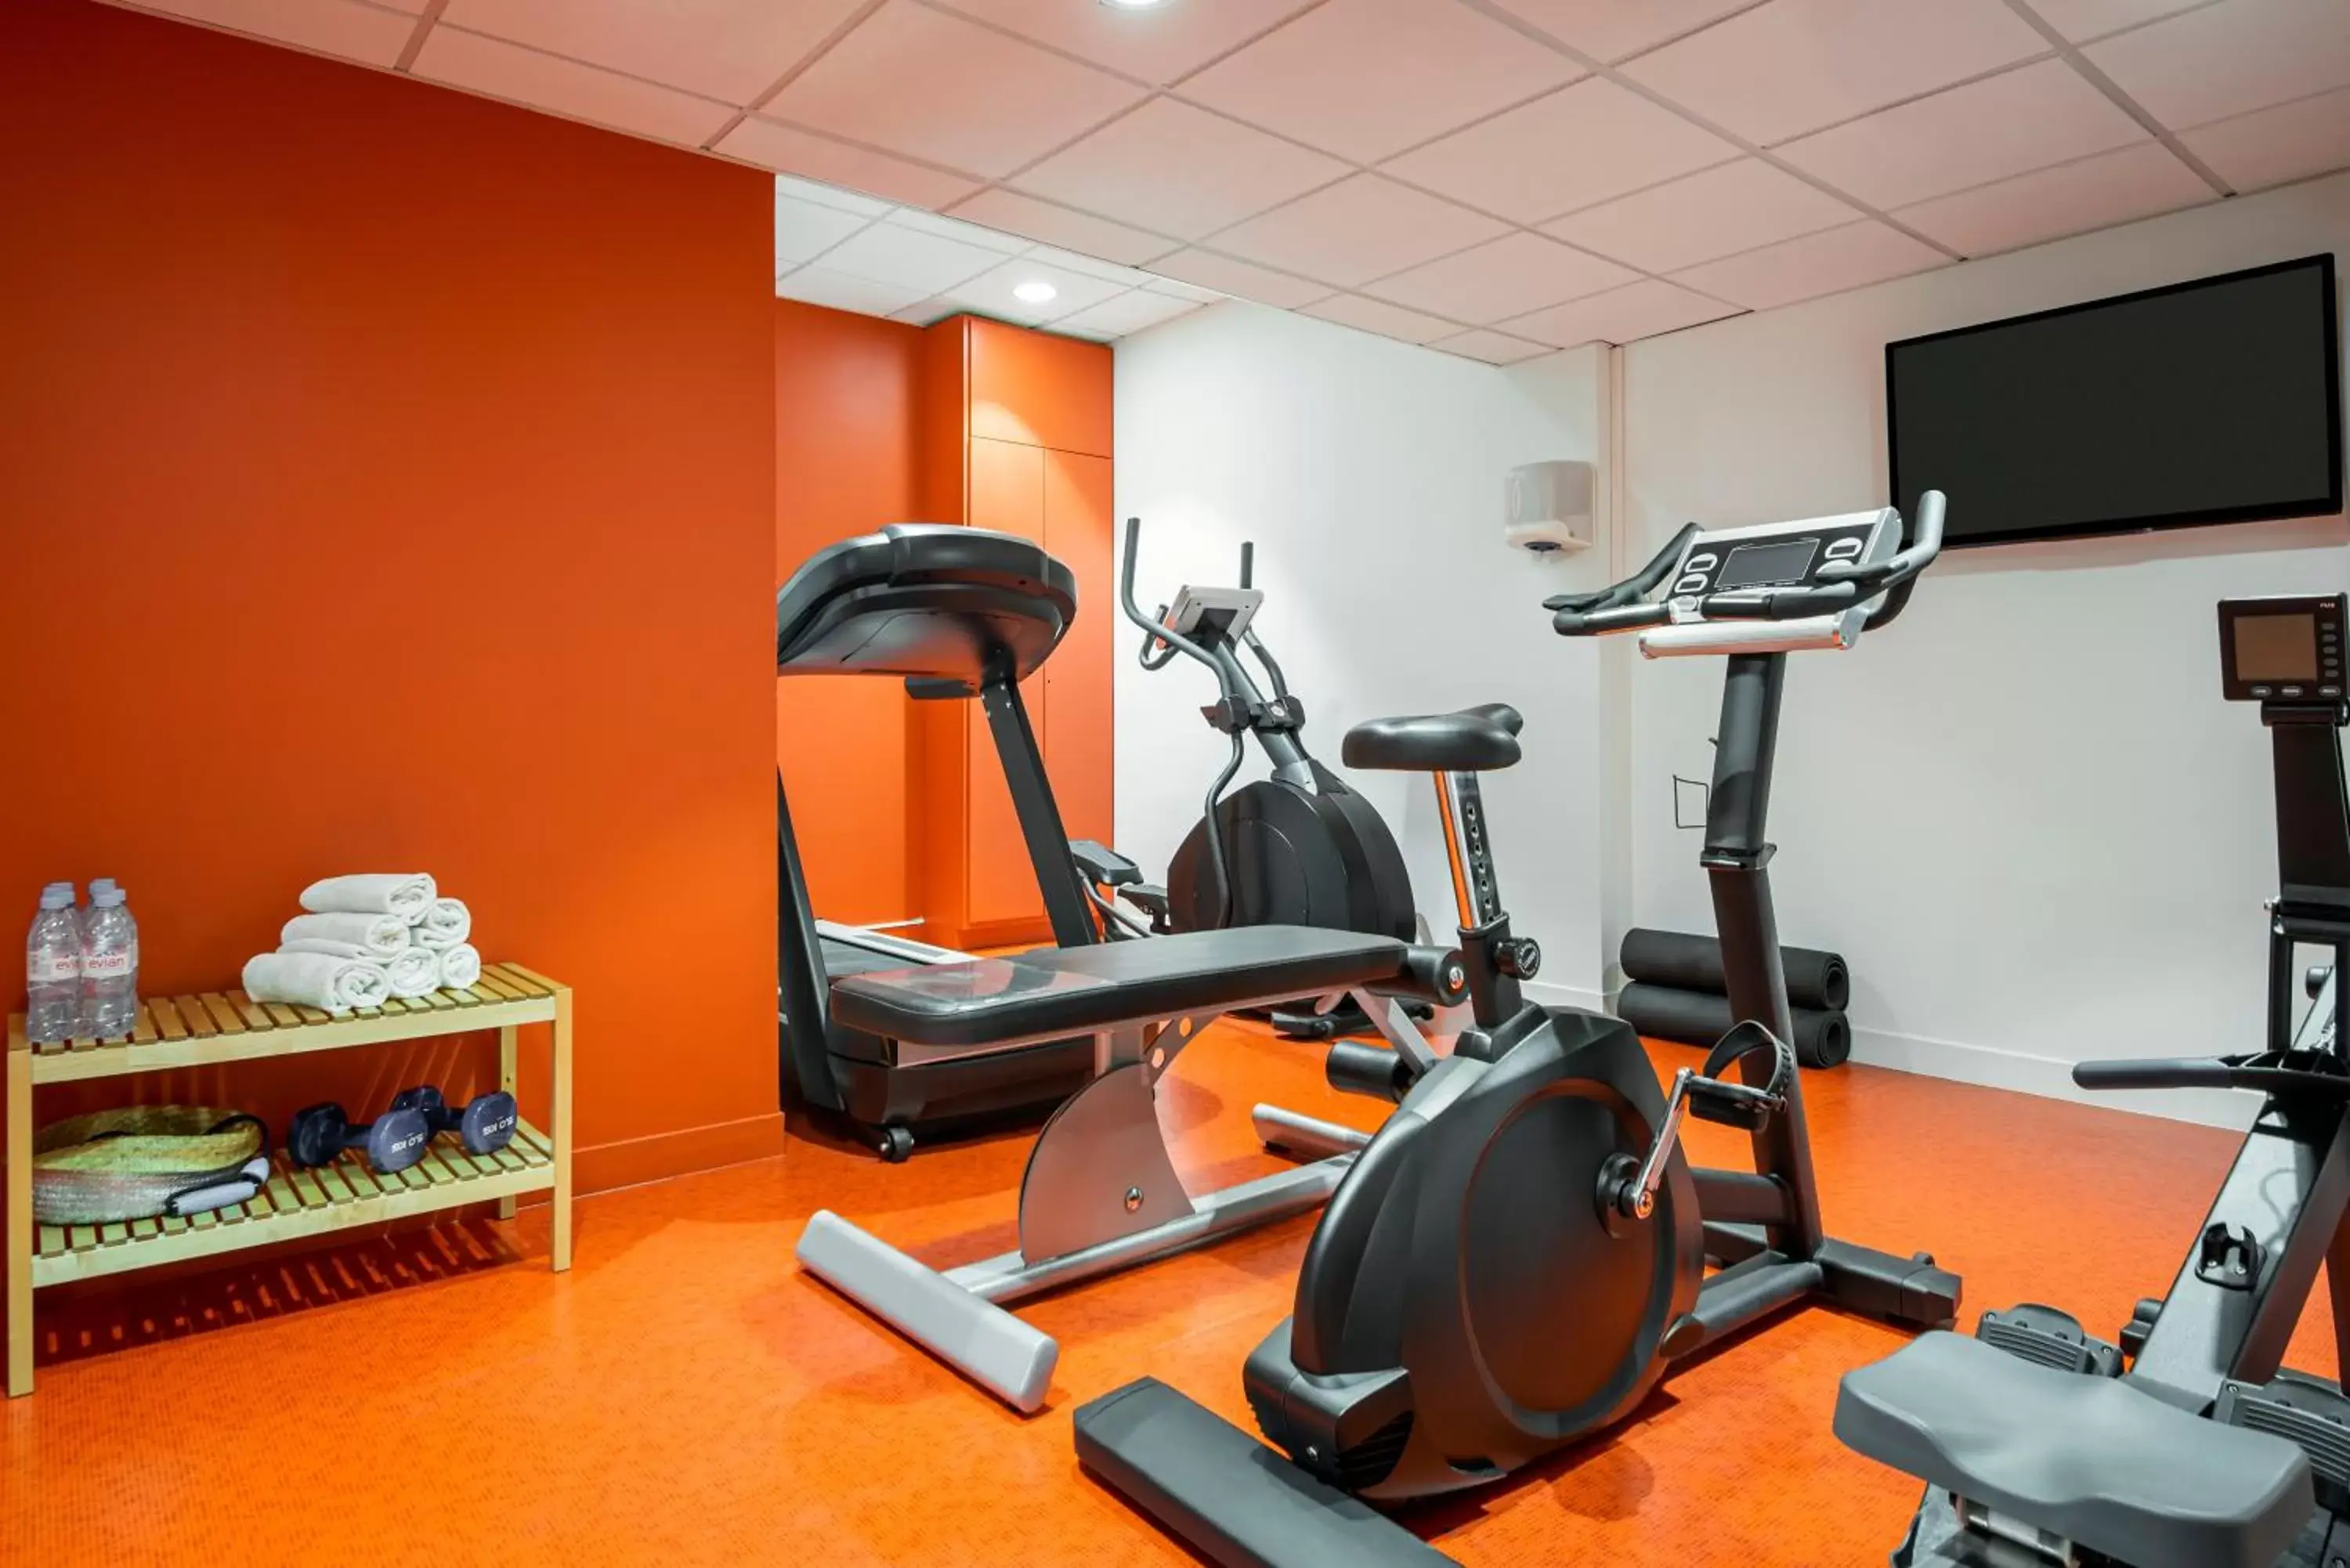 Fitness centre/facilities, Fitness Center/Facilities in Aparthotel Adagio Paris Bercy Village